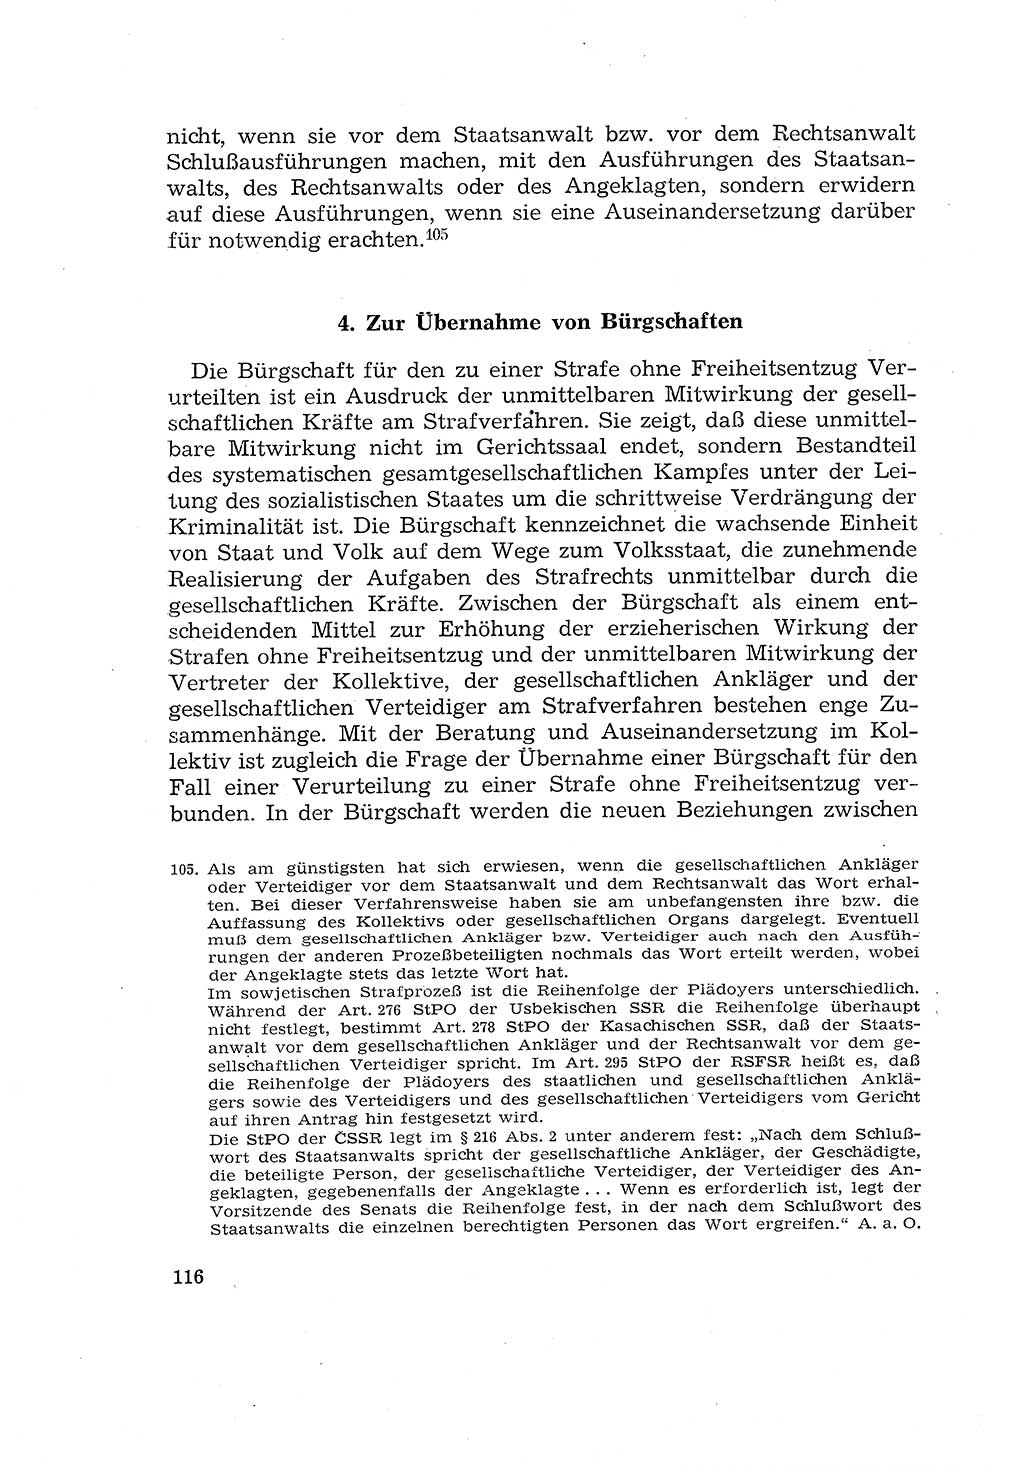 Die Mitwirkung der Werktätigen am Strafverfahren [Deutsche Demokratische Republik (DDR)] 1966, Seite 116 (Mitw. Str.-Verf. DDR 1966, S. 116)